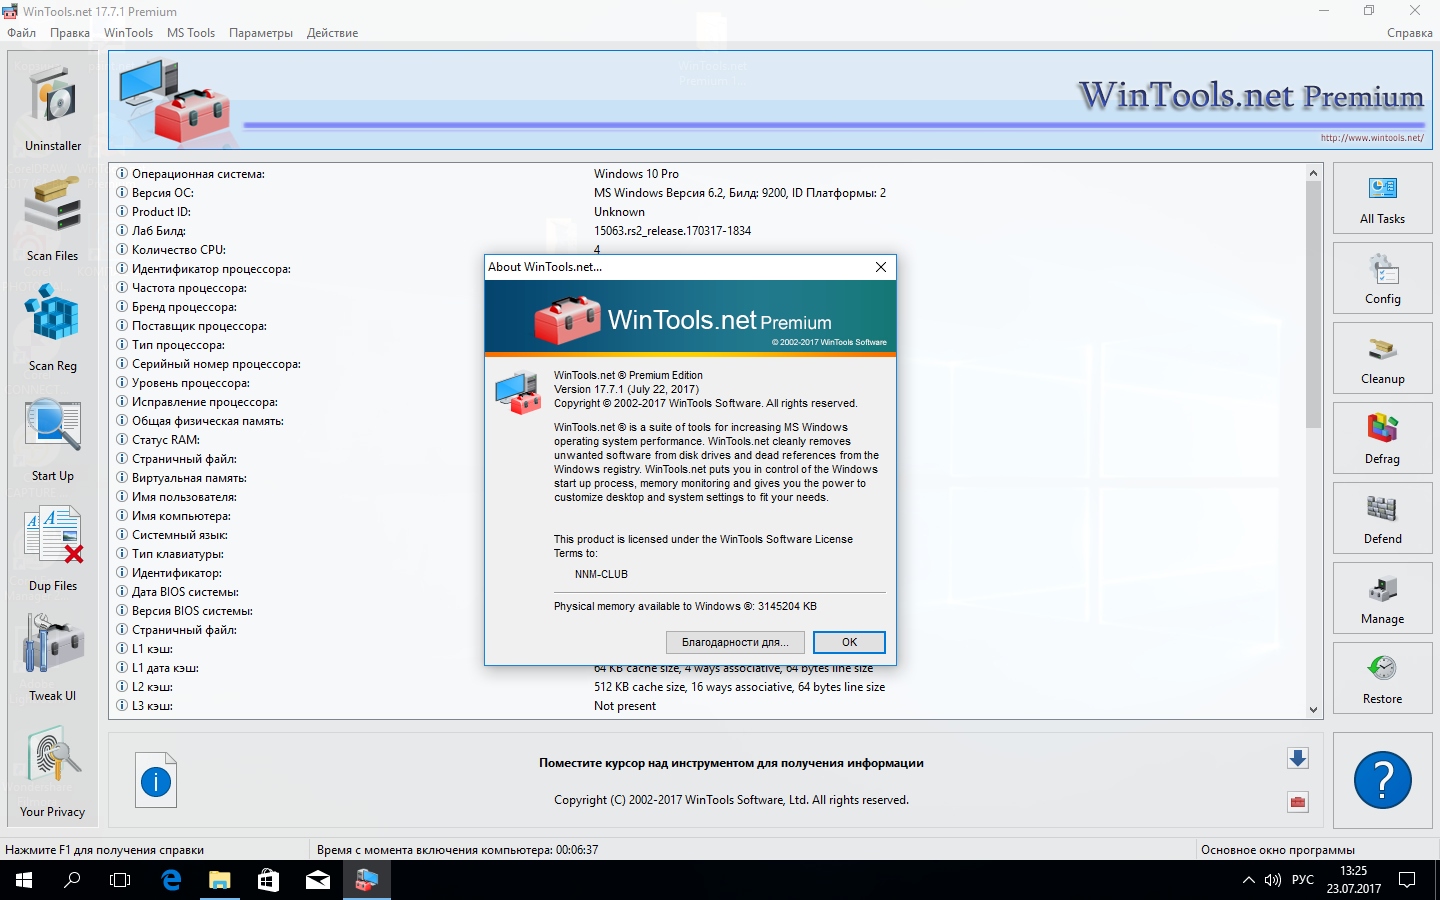 for ios instal WinTools net Premium 23.11.1